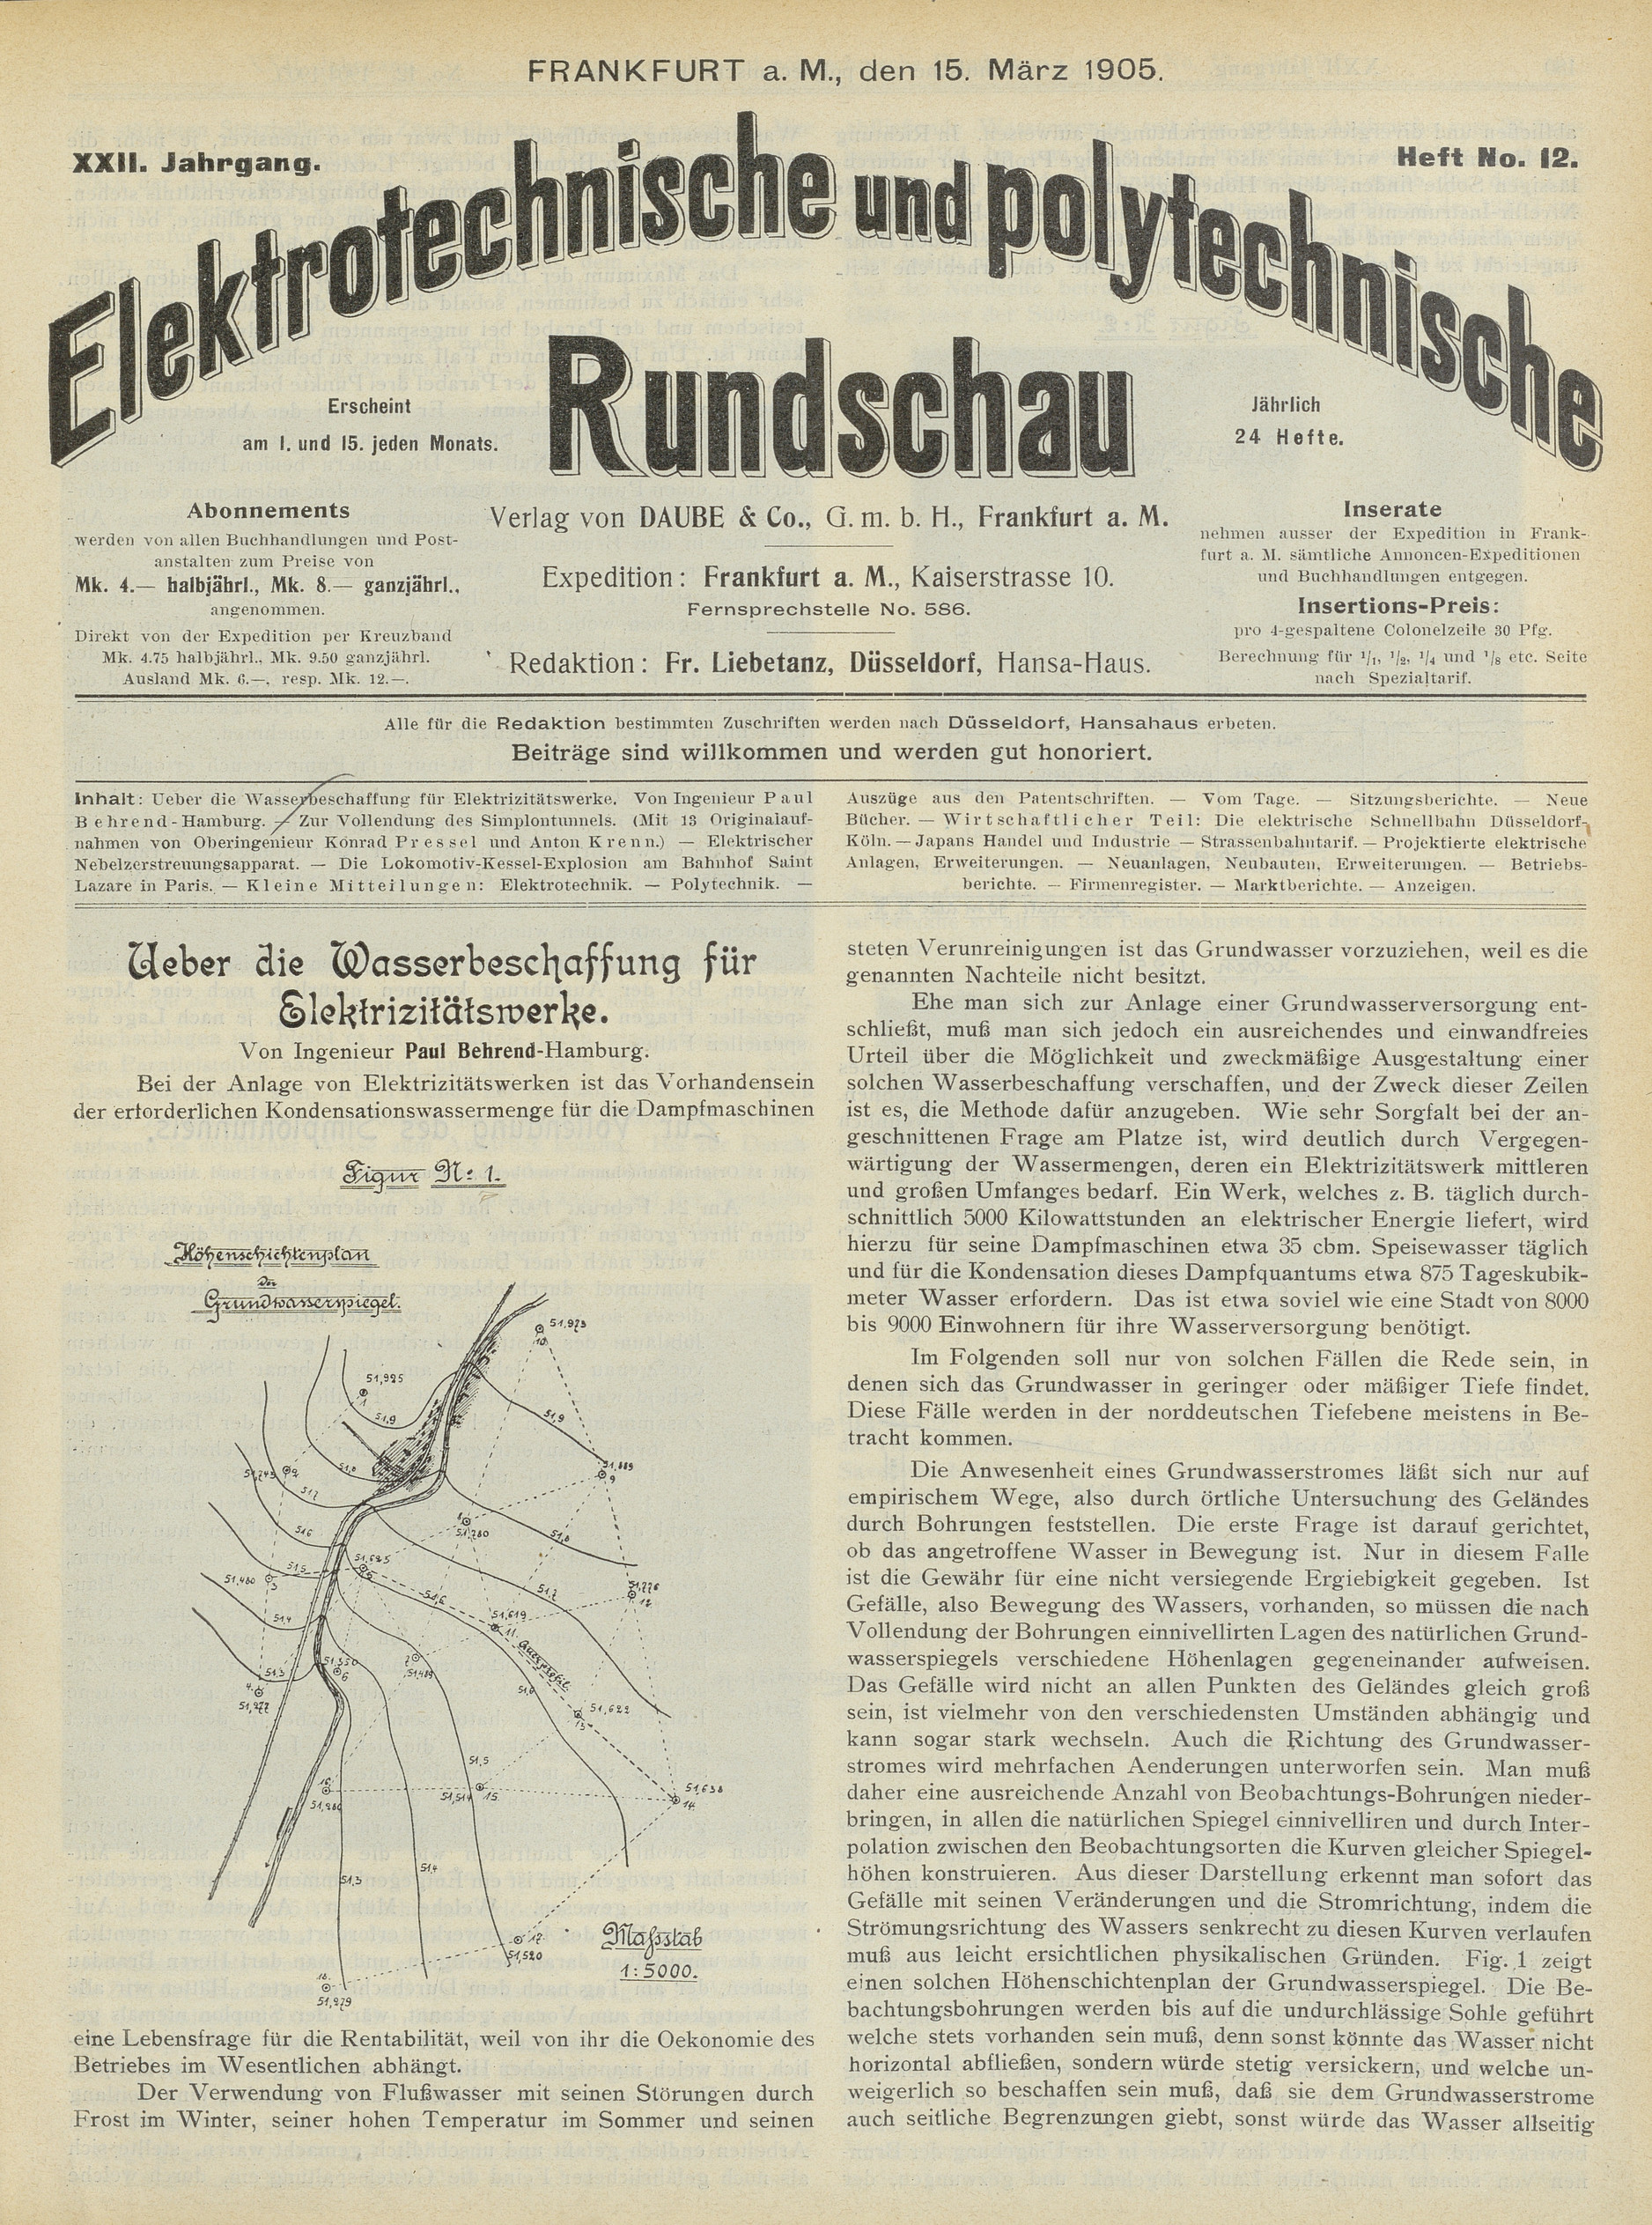 Elektrotechnische und polytechnische Rundschau, XXII. Jahrgang, Heft No. 12